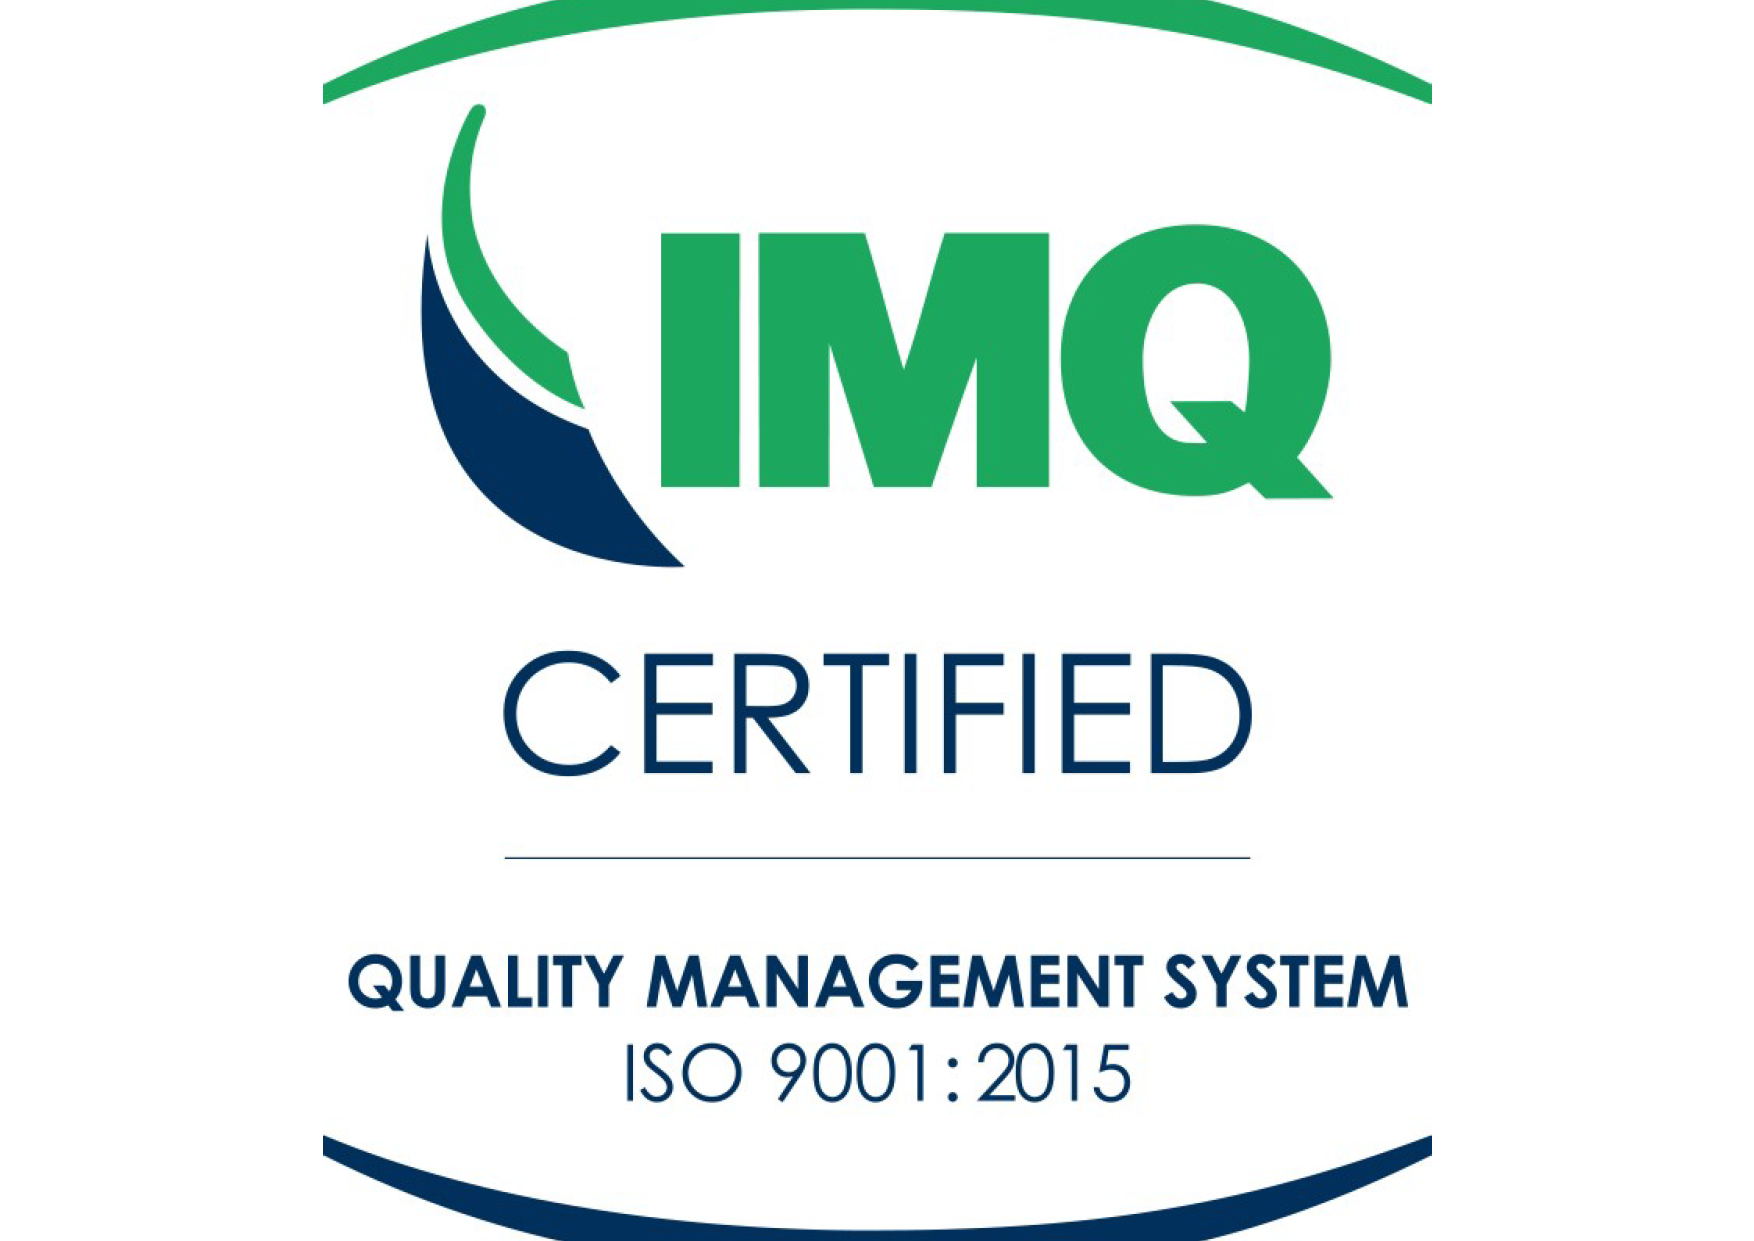 SG01 Logo ISO 9001